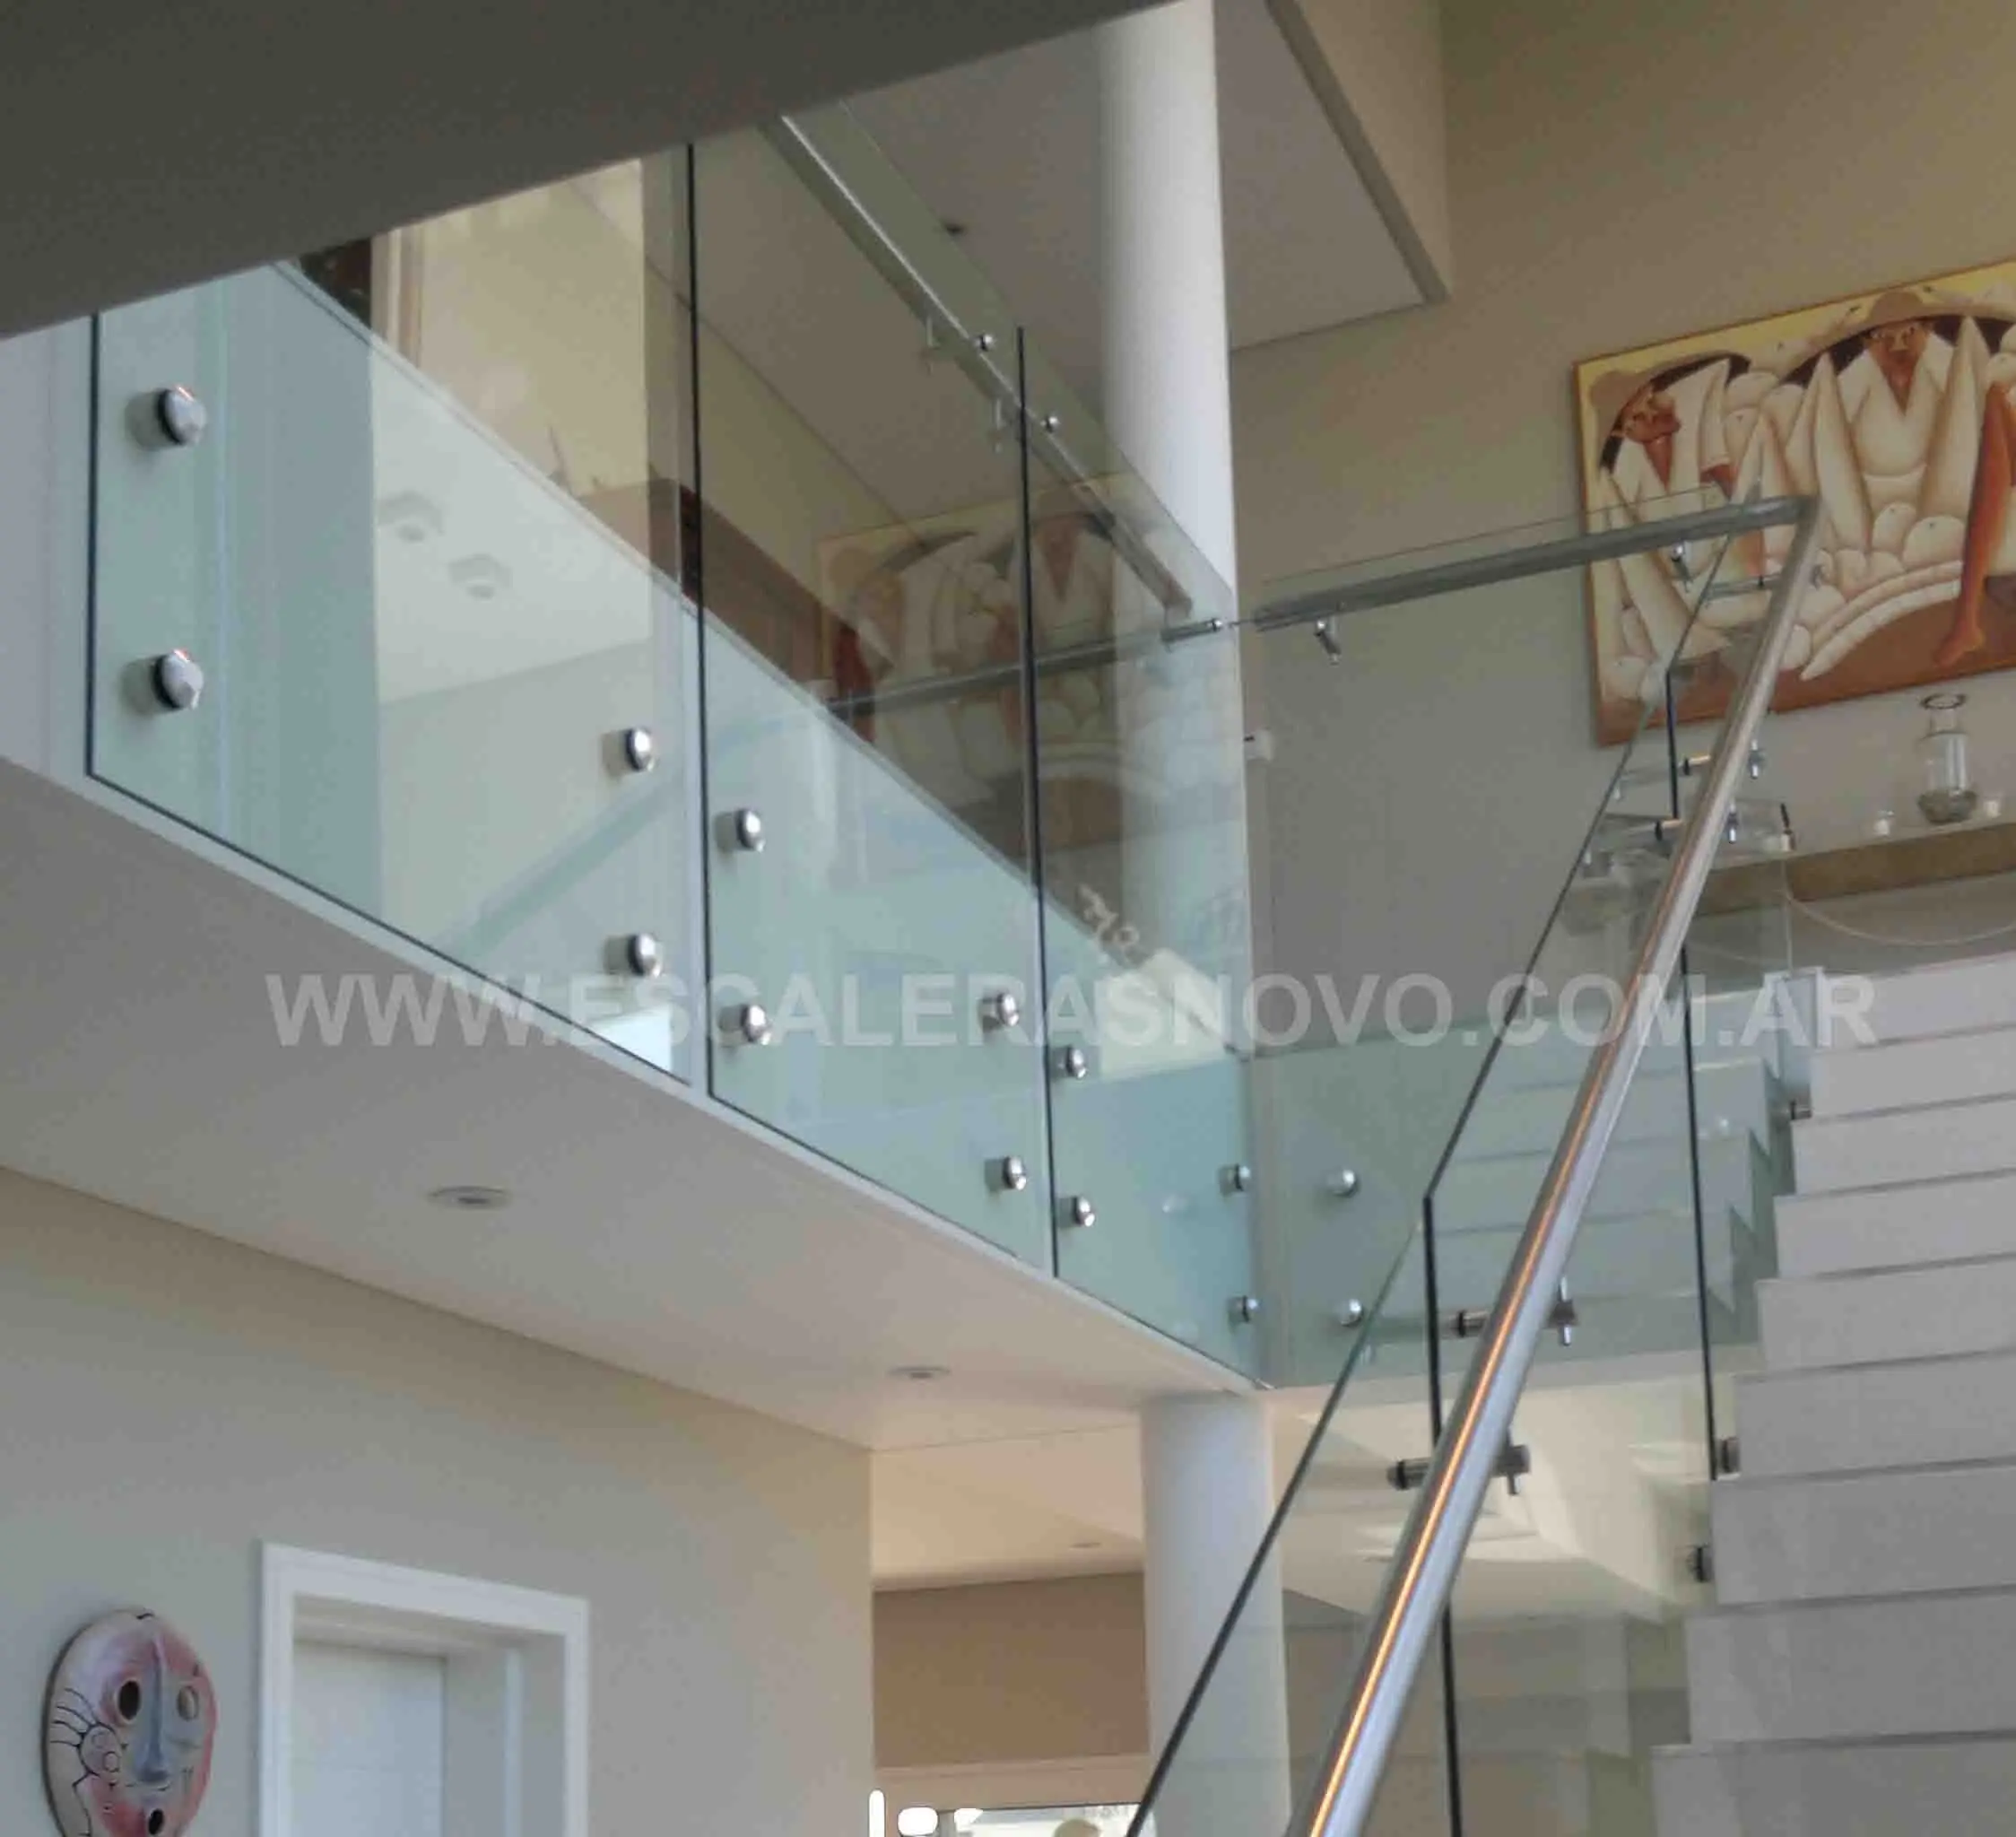 barandas de vidrio templado para escaleras - Qué tipo de barandilla es mejor